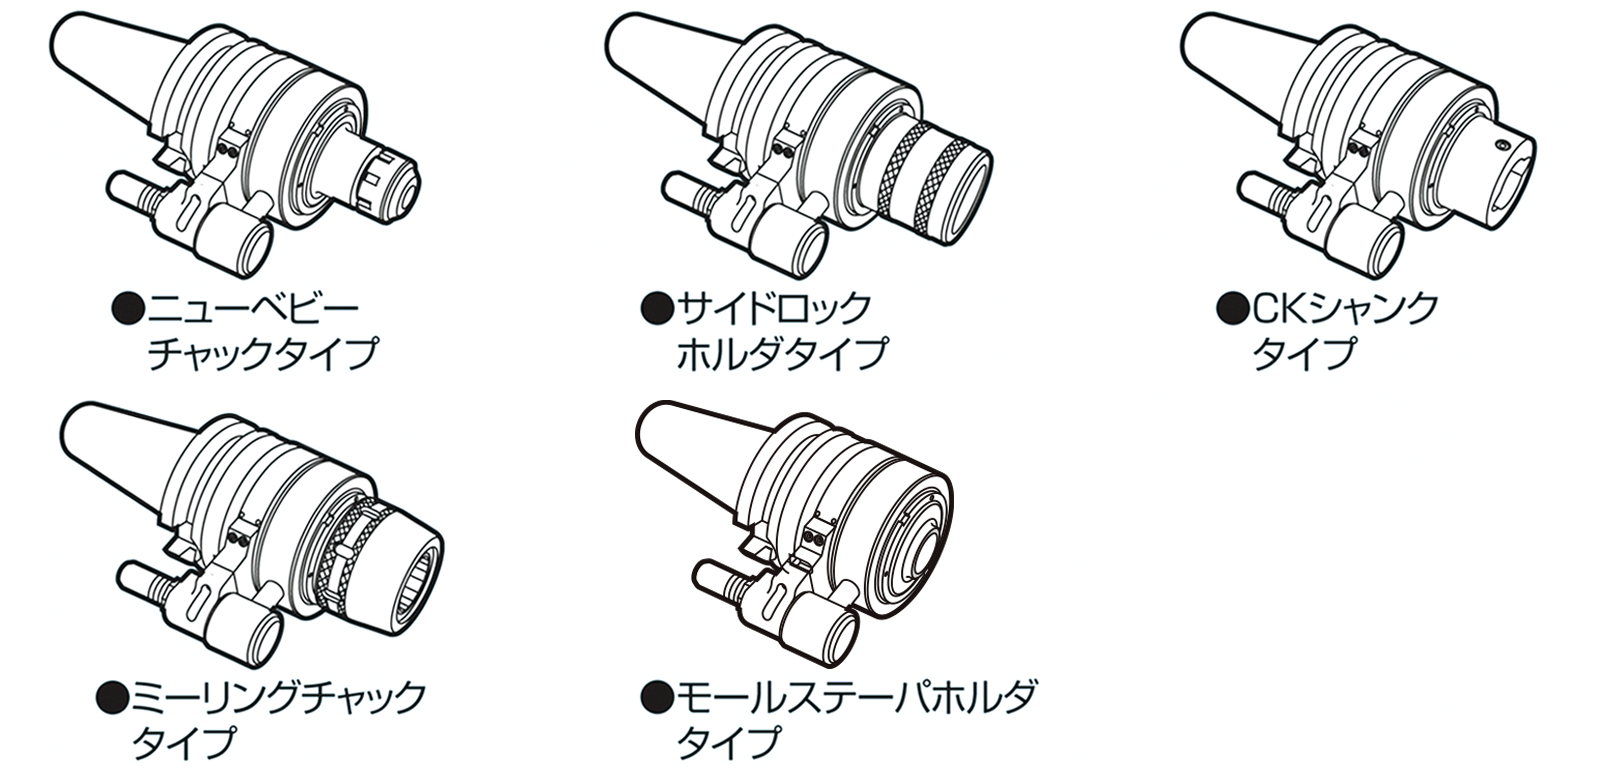 大昭和精機:タップホルダ MGT20-P1/4-115 切削 研磨